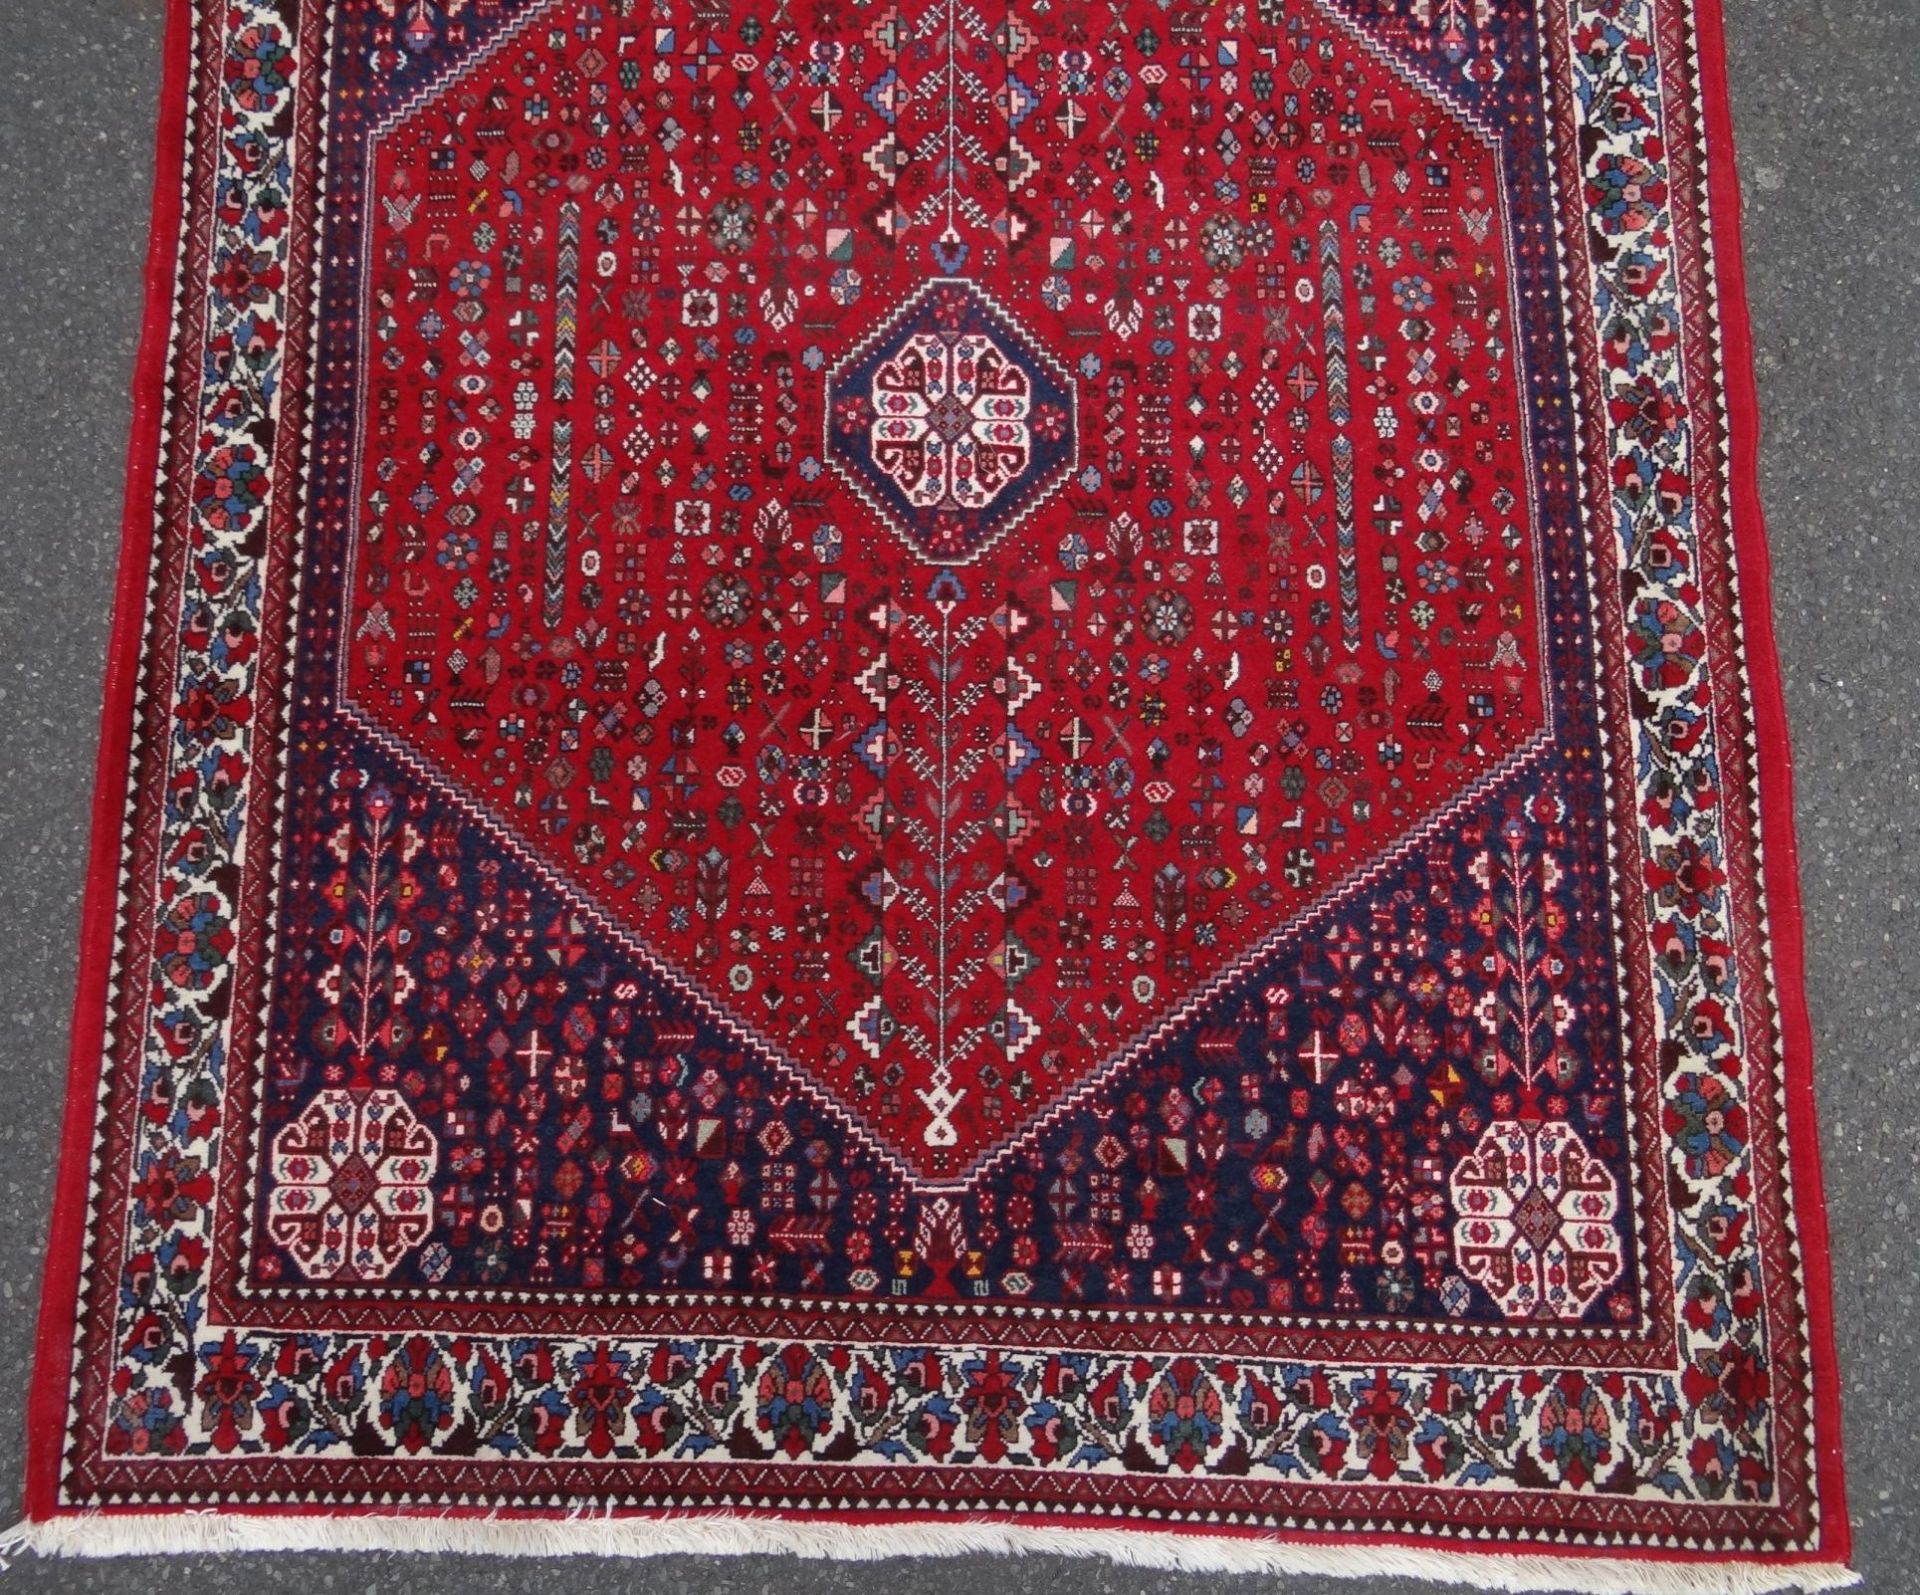 kl. Perser Teppich, 205x150 cm, - Bild 2 aus 5